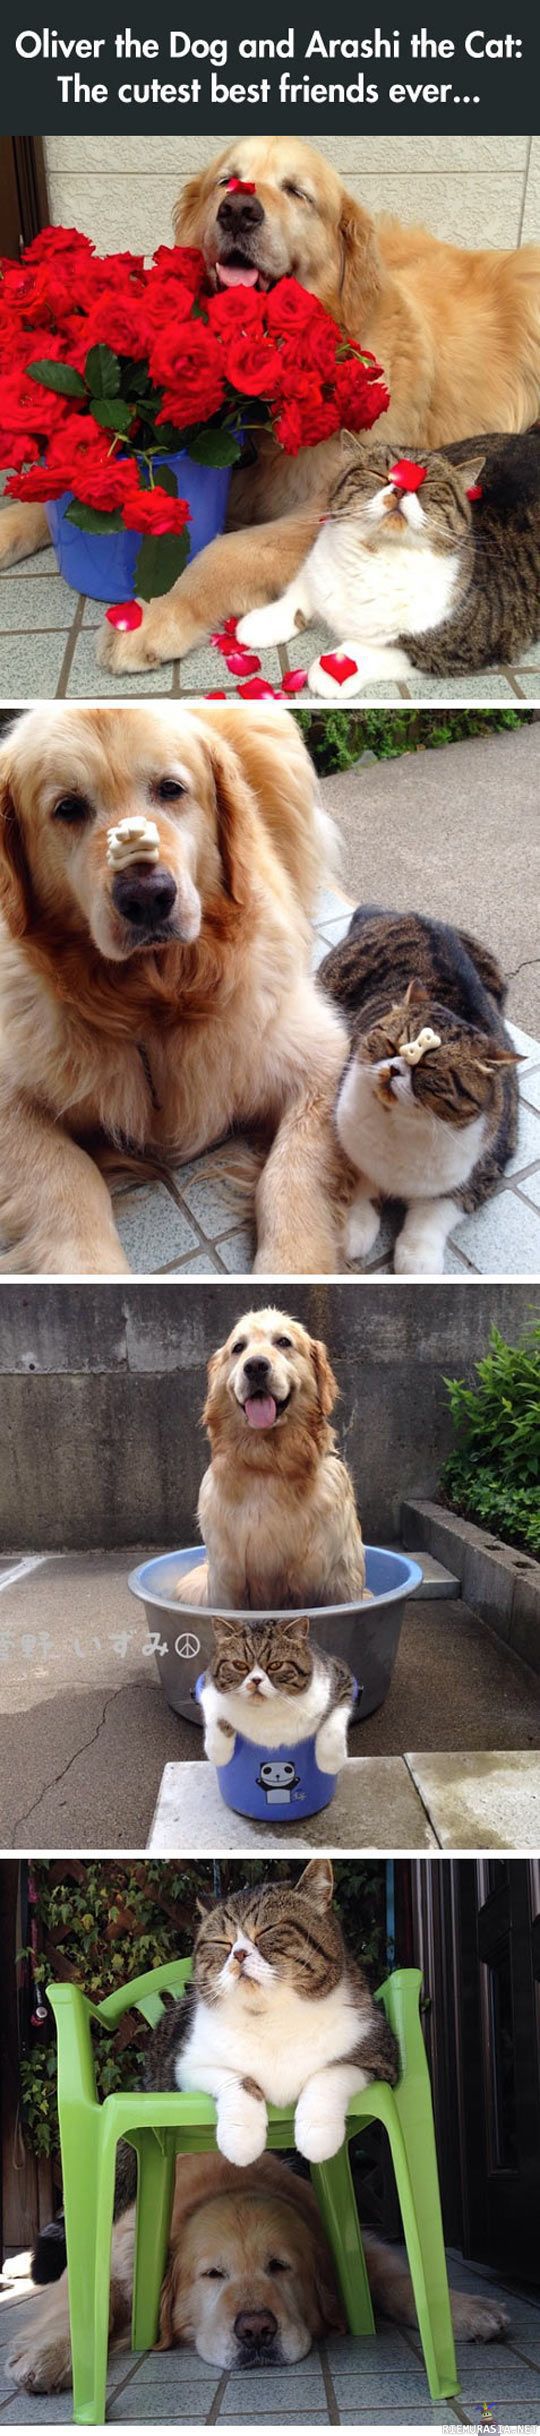 Oliver & Arashi - Kissa ja koira ovat parhaat kaverukset